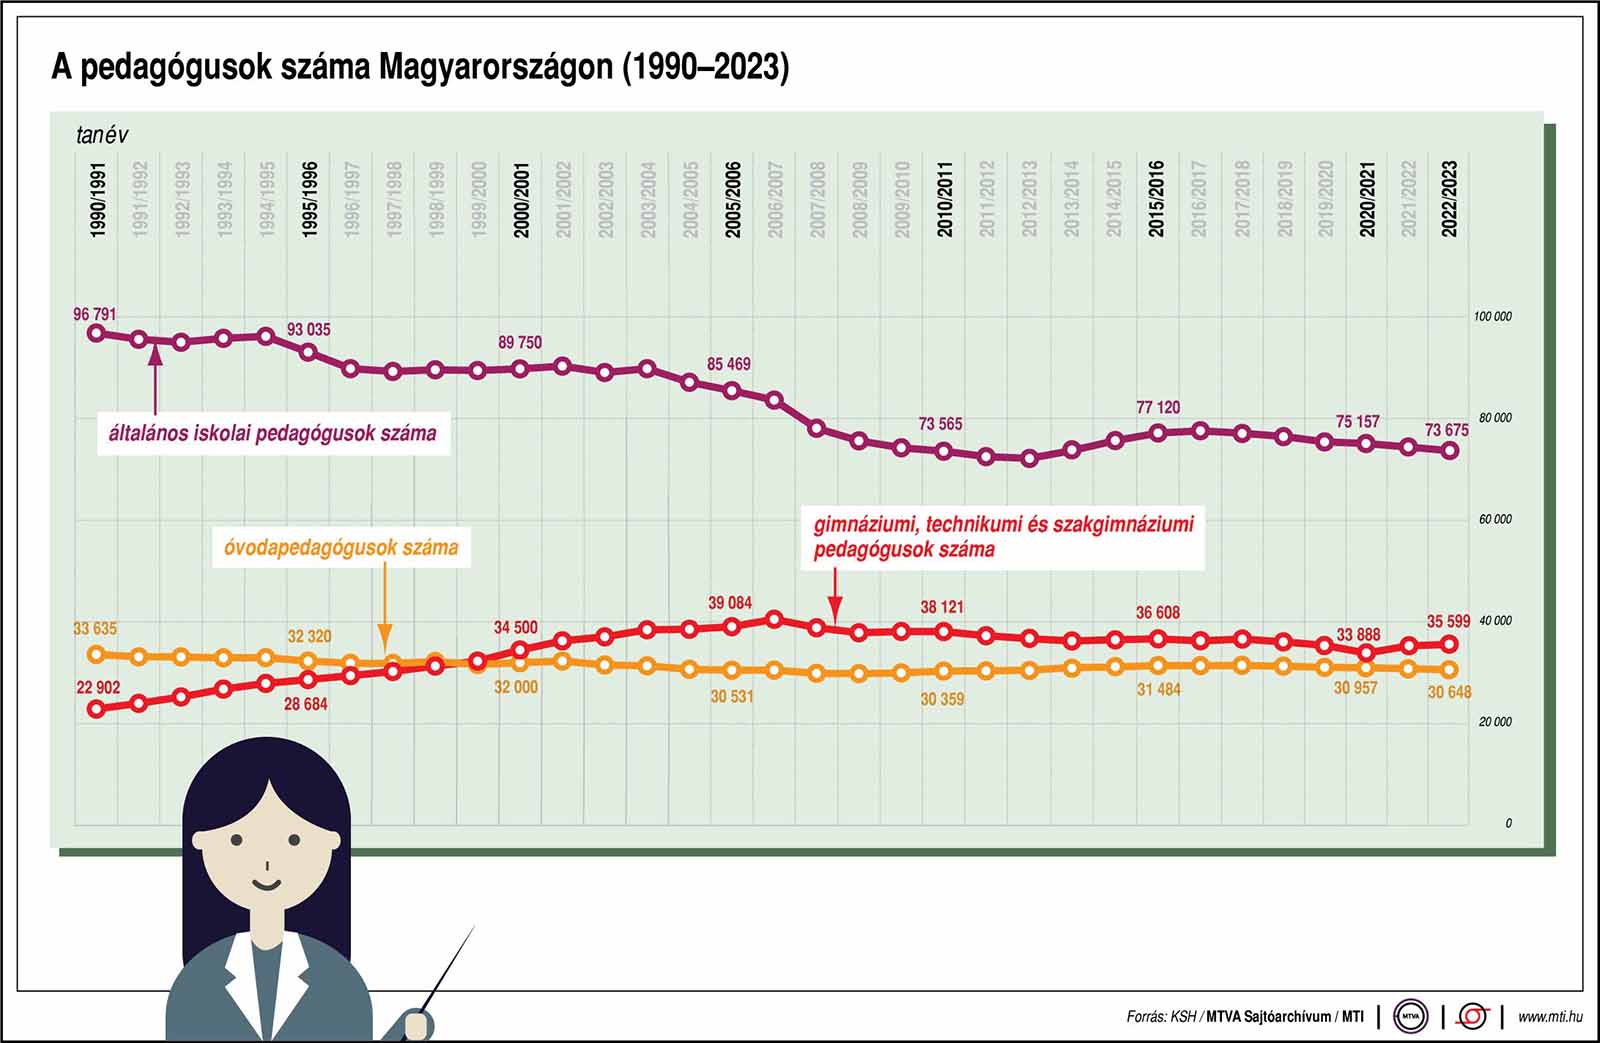 A pedagógusok száma Magyarországon (1990-2023)